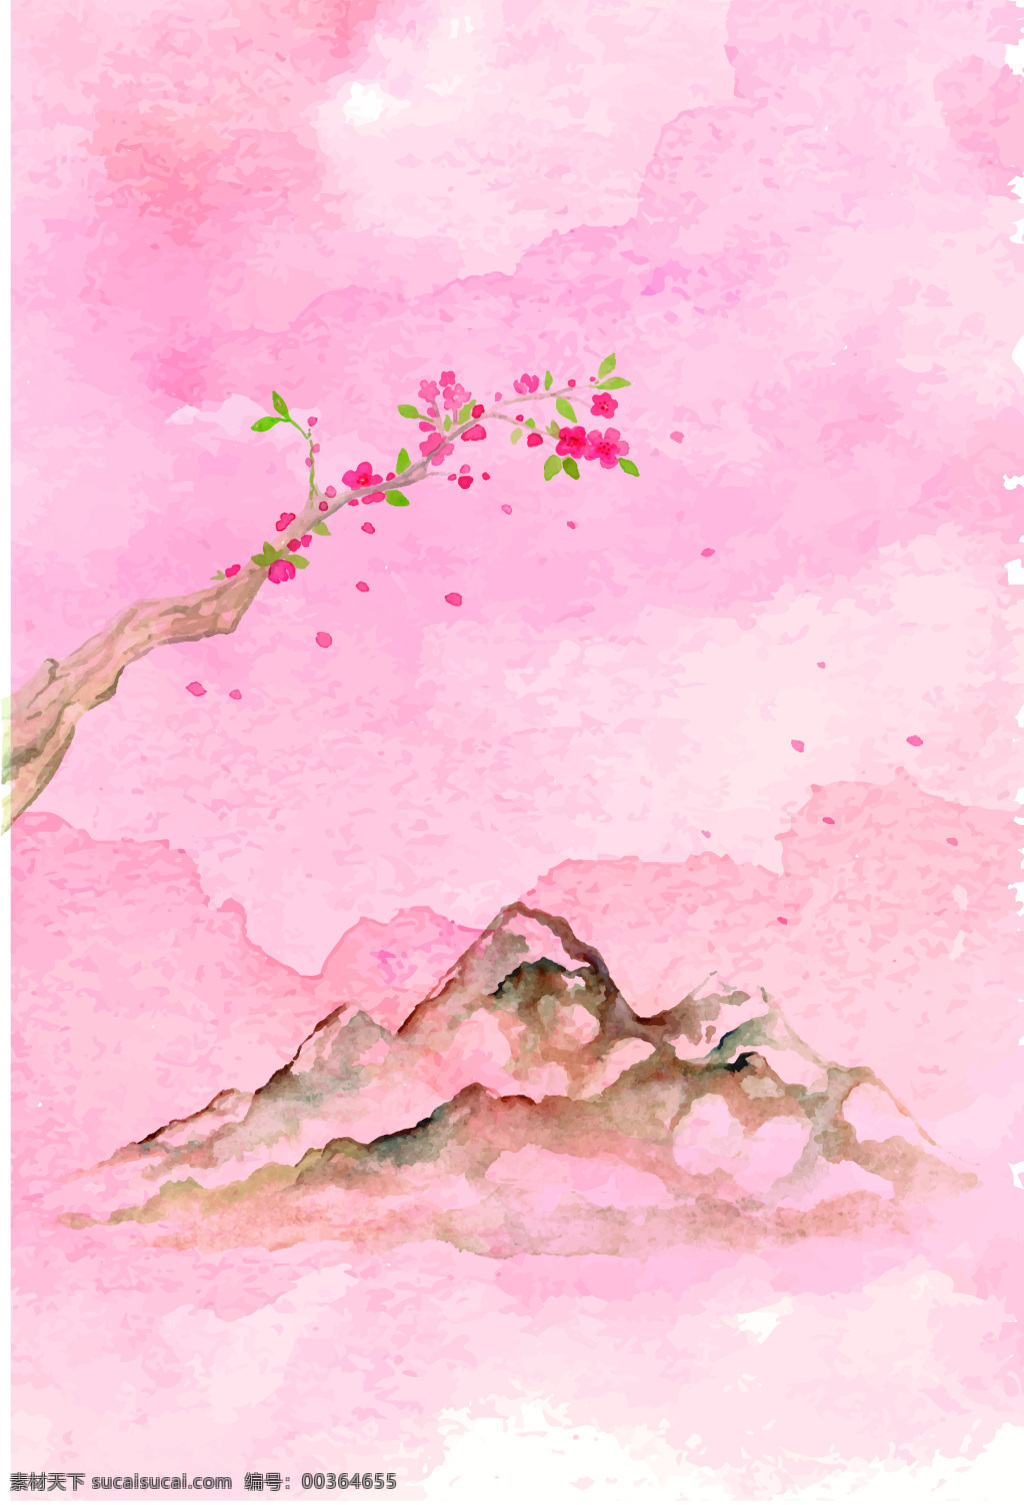 背景 粉色 海报 浪漫 梦幻 矢量樱花 水彩 樱花 樱花瓣 樱花背景 樱花素材